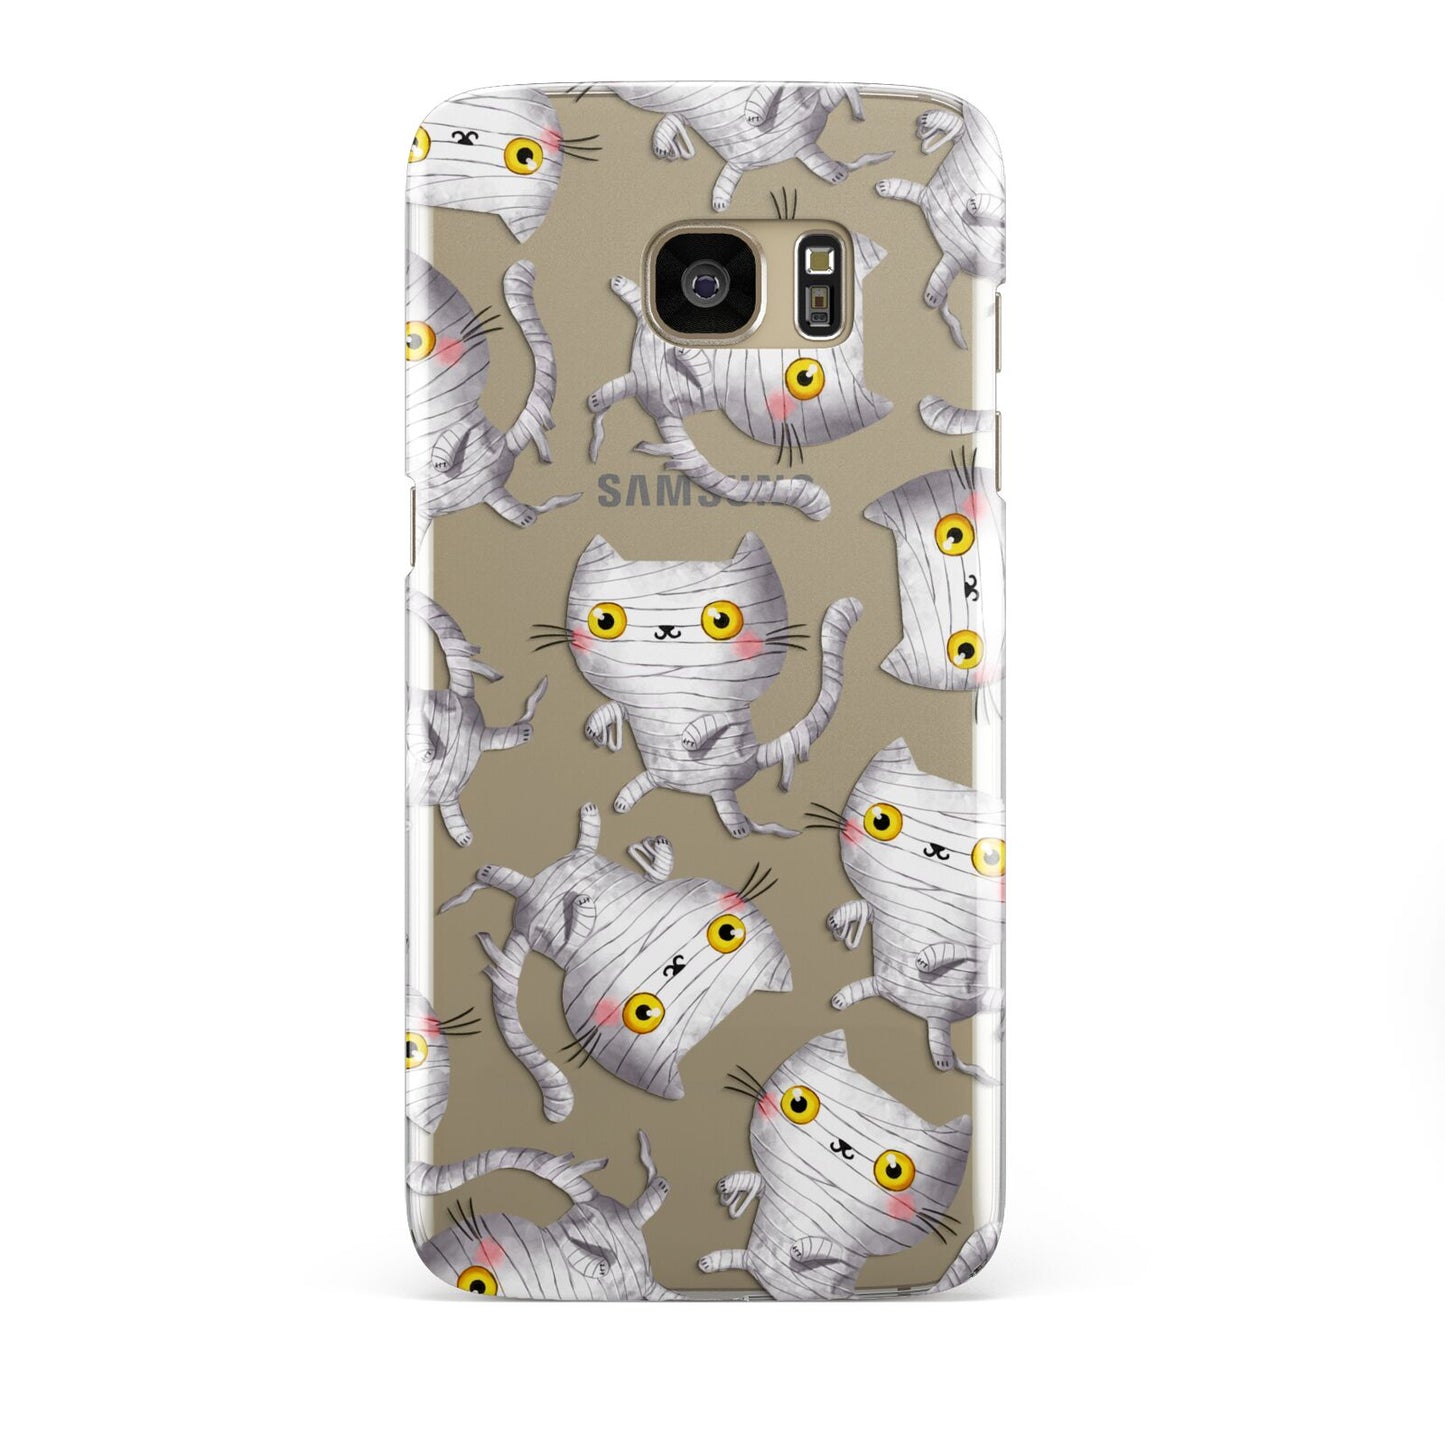 Mummy Cats Samsung Galaxy S7 Edge Case